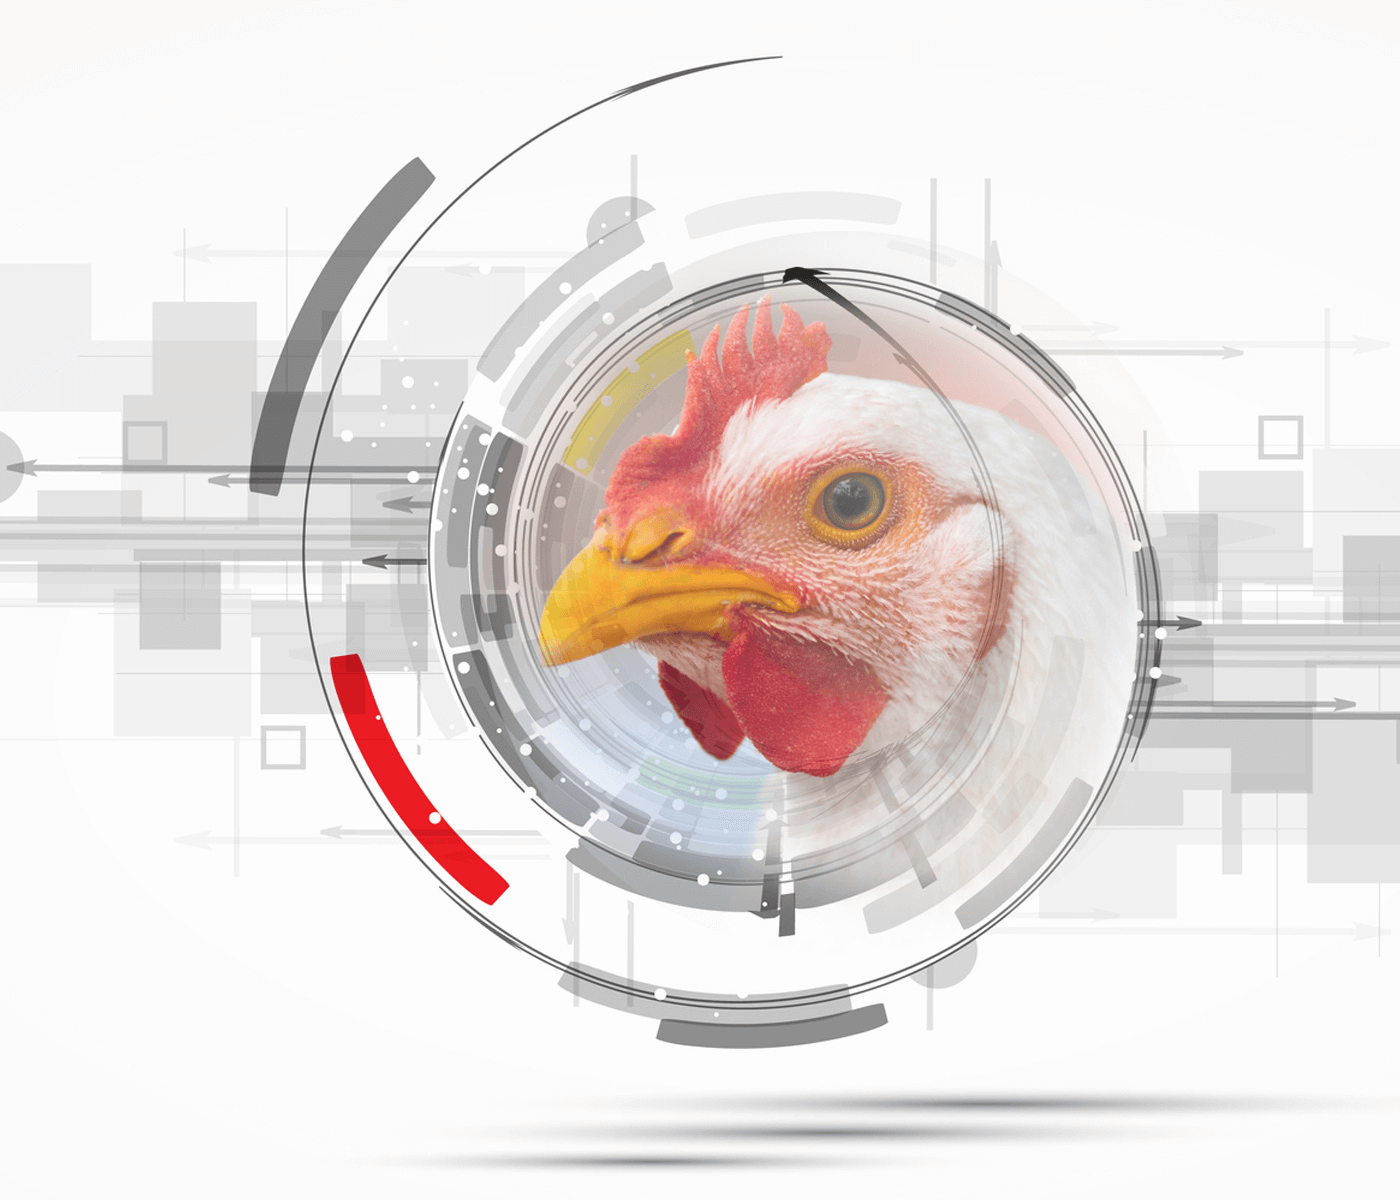 Saúde intestinal de frangos de corte – Novos tempos, novos desafios